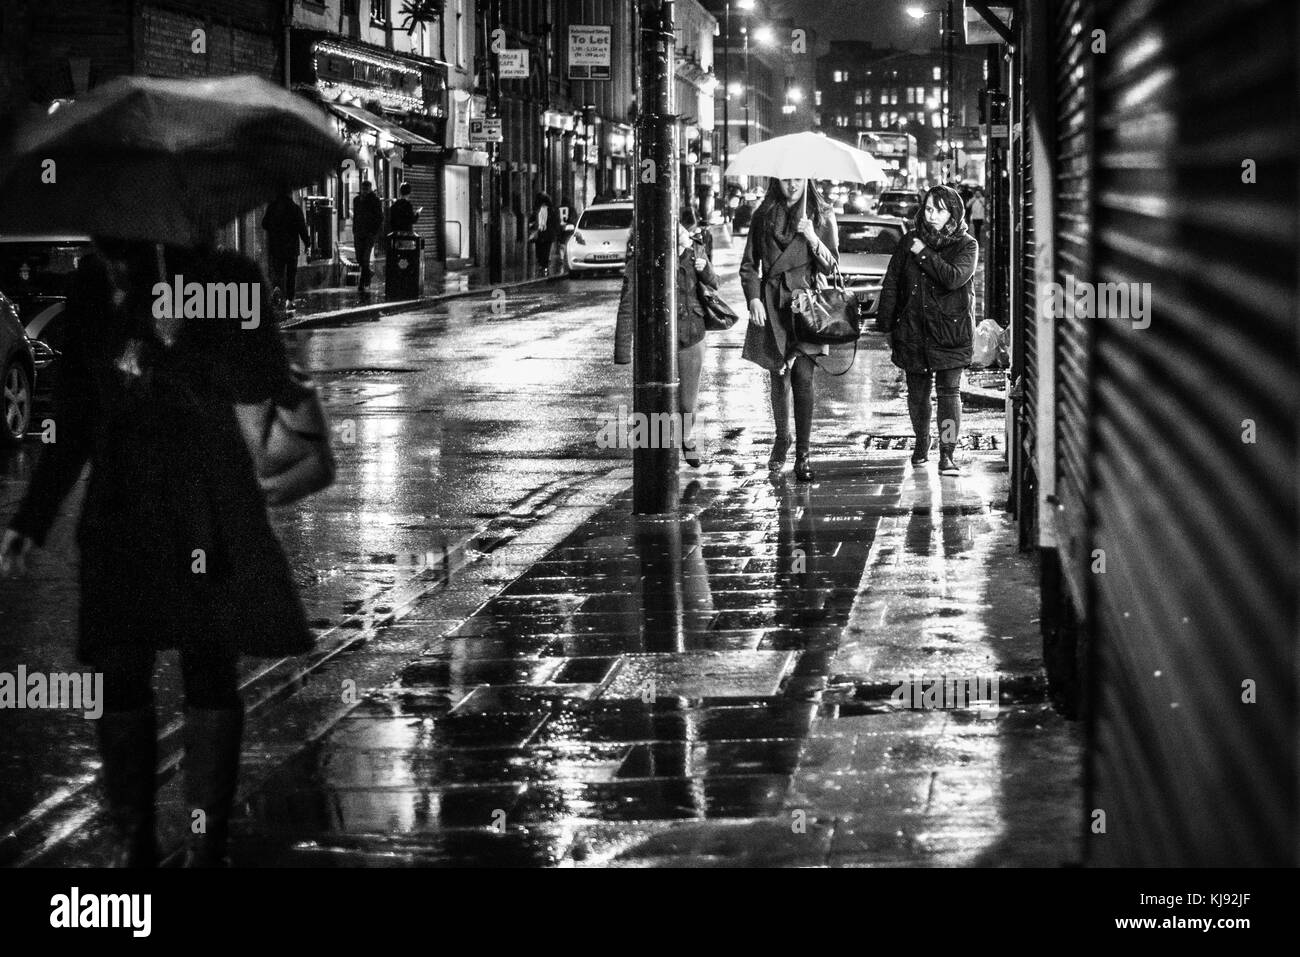 Sera vista guardando verso il basso Thomas Street, Manchester Central. Le donne sono illuminati da una finestra del negozio, come fanno il loro modo attraverso il lettore RUSH ore di pioggia Foto Stock